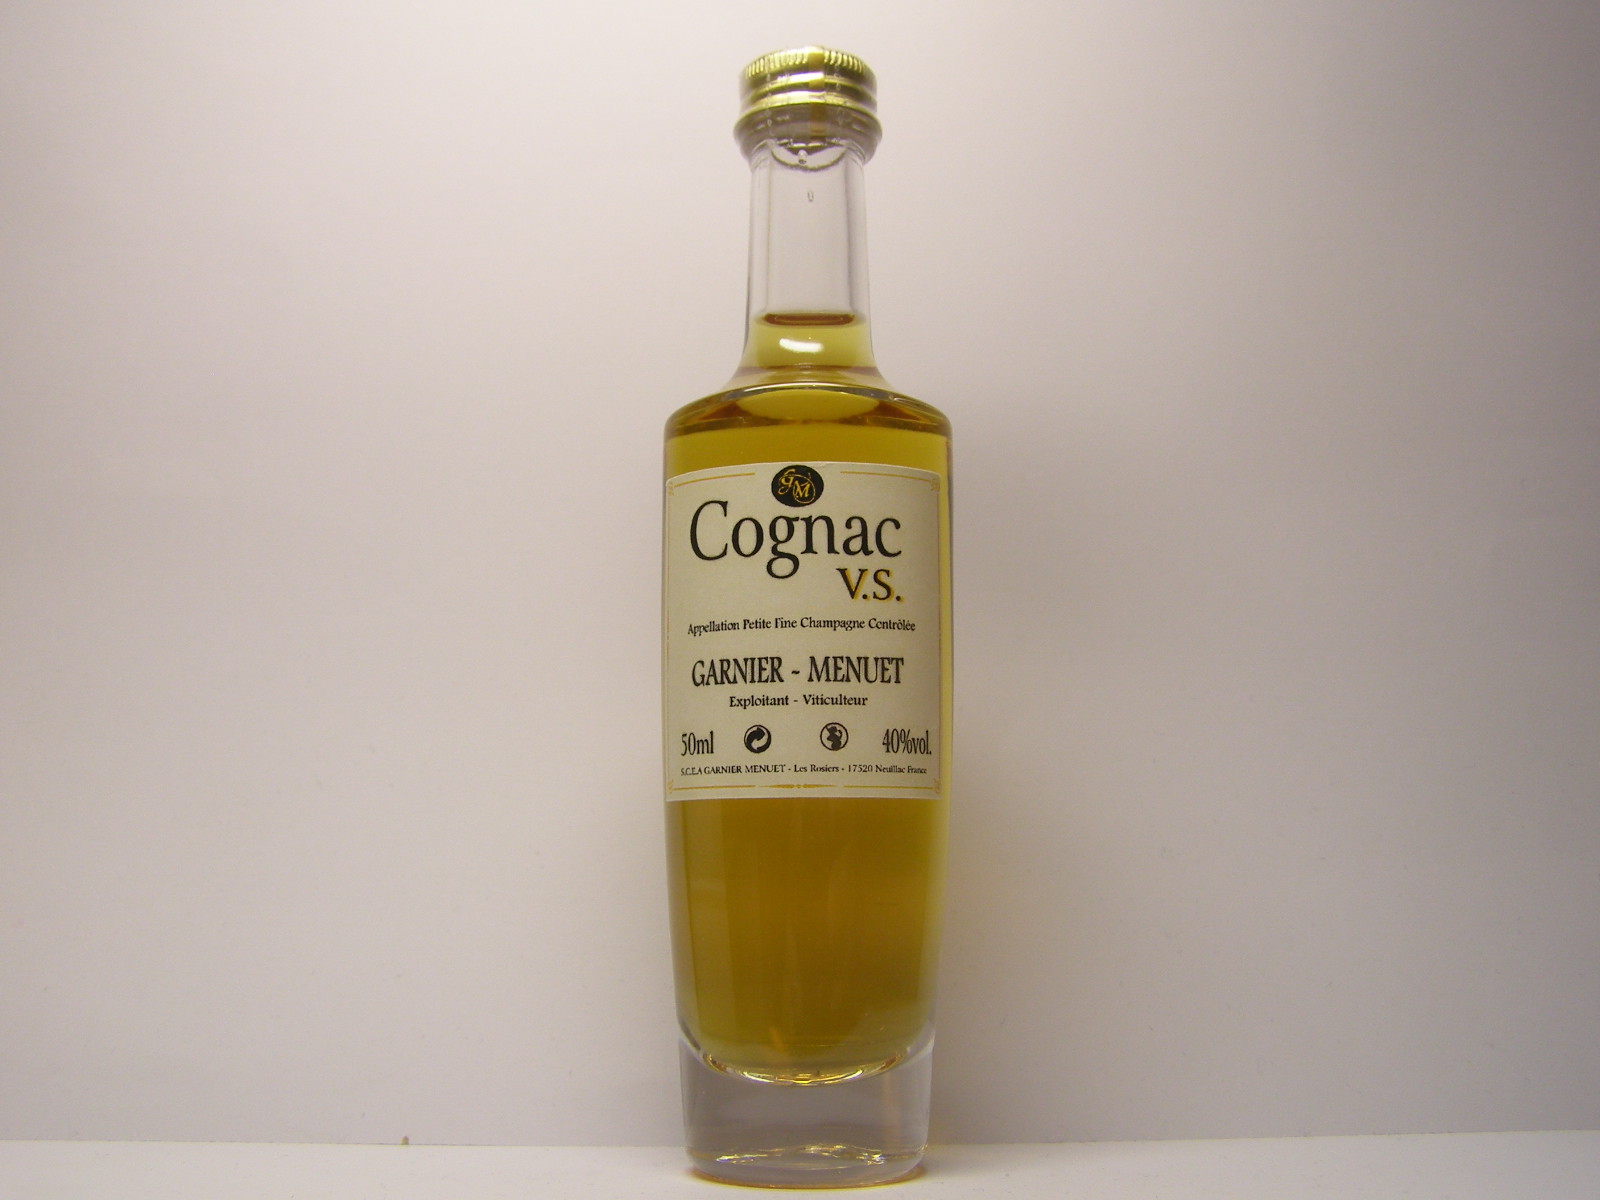 GARNIER - MENUET V.S. Petite Fine Champagne Cognac